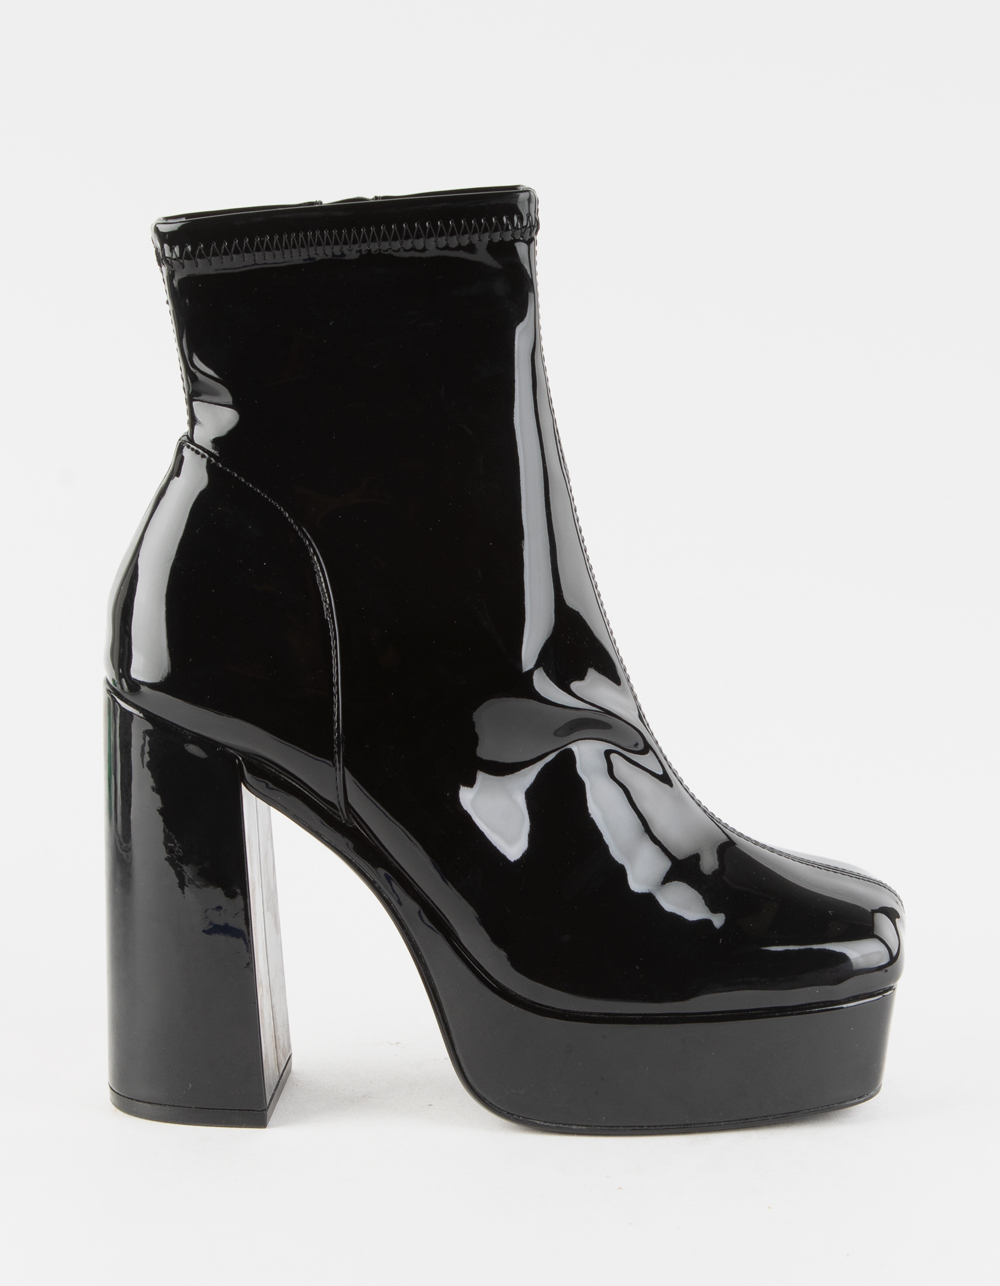 STEVE MADDEN Bianca Patent Platform Womens Boots - BLACK | Tillys